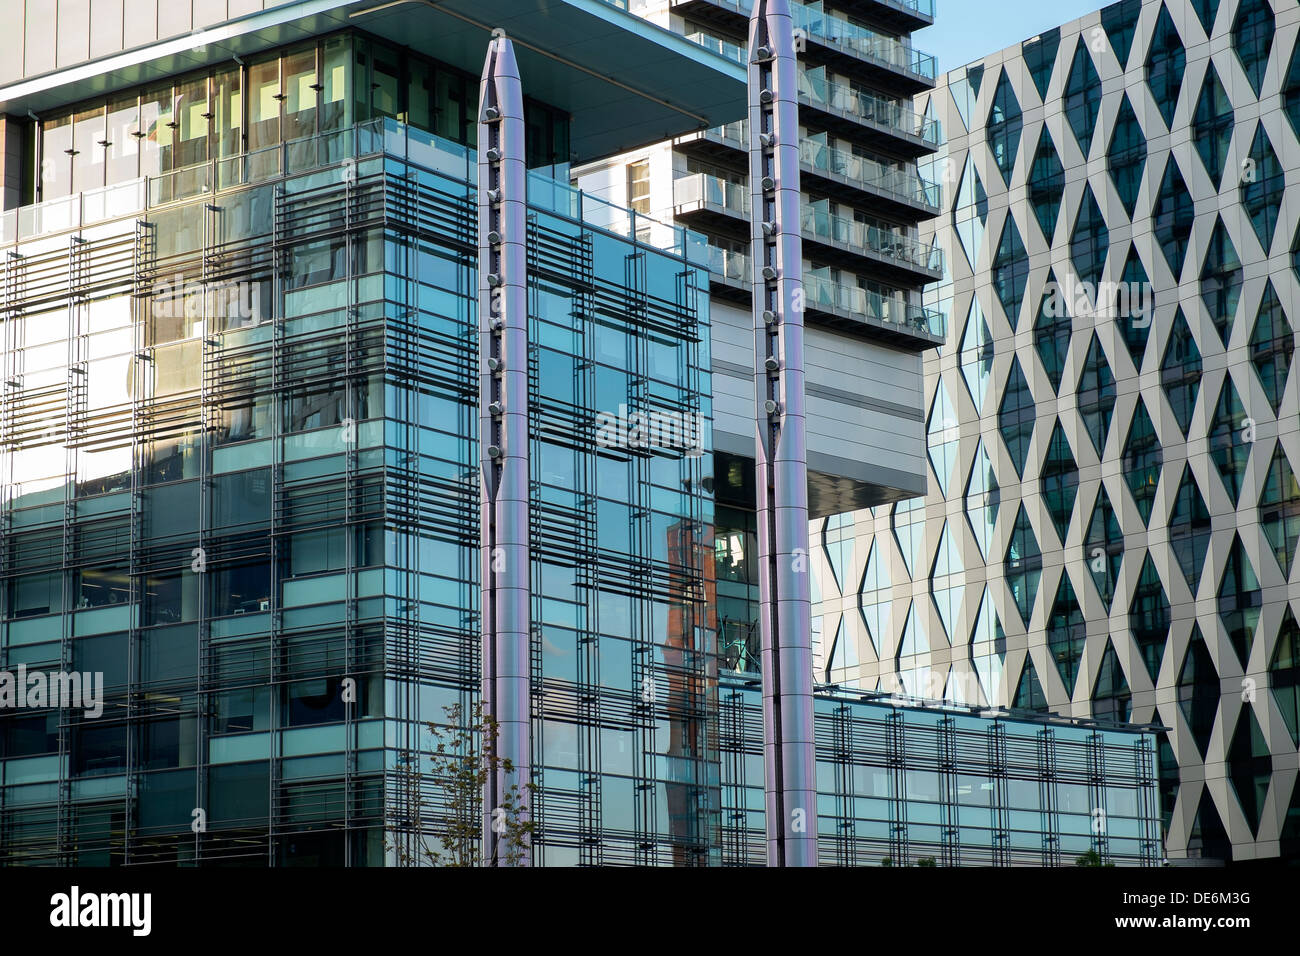 England, Greater Manchester, Großaufnahme der modernen Architektur in der Media City Stockfoto